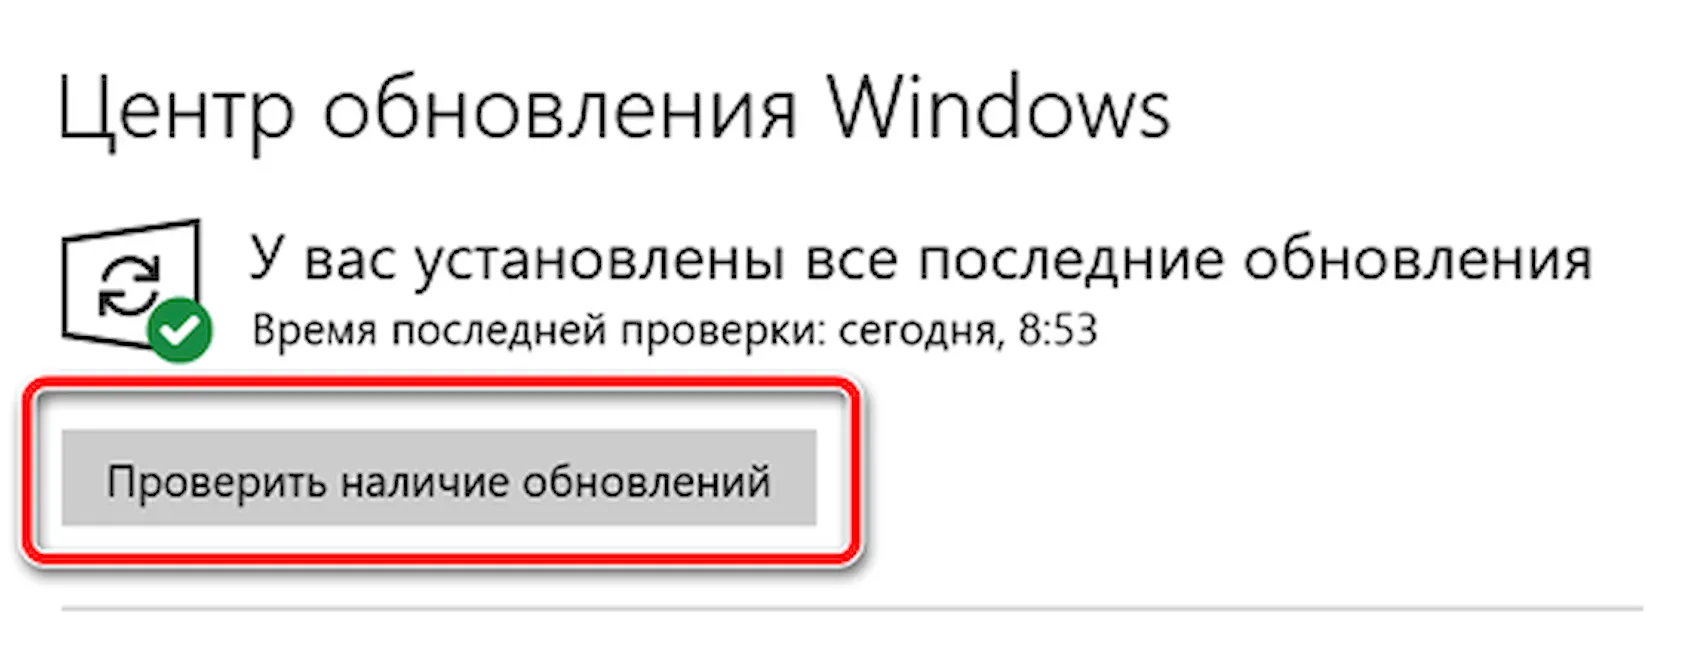 Кнопка проверки наличия обновлений для Windows 10